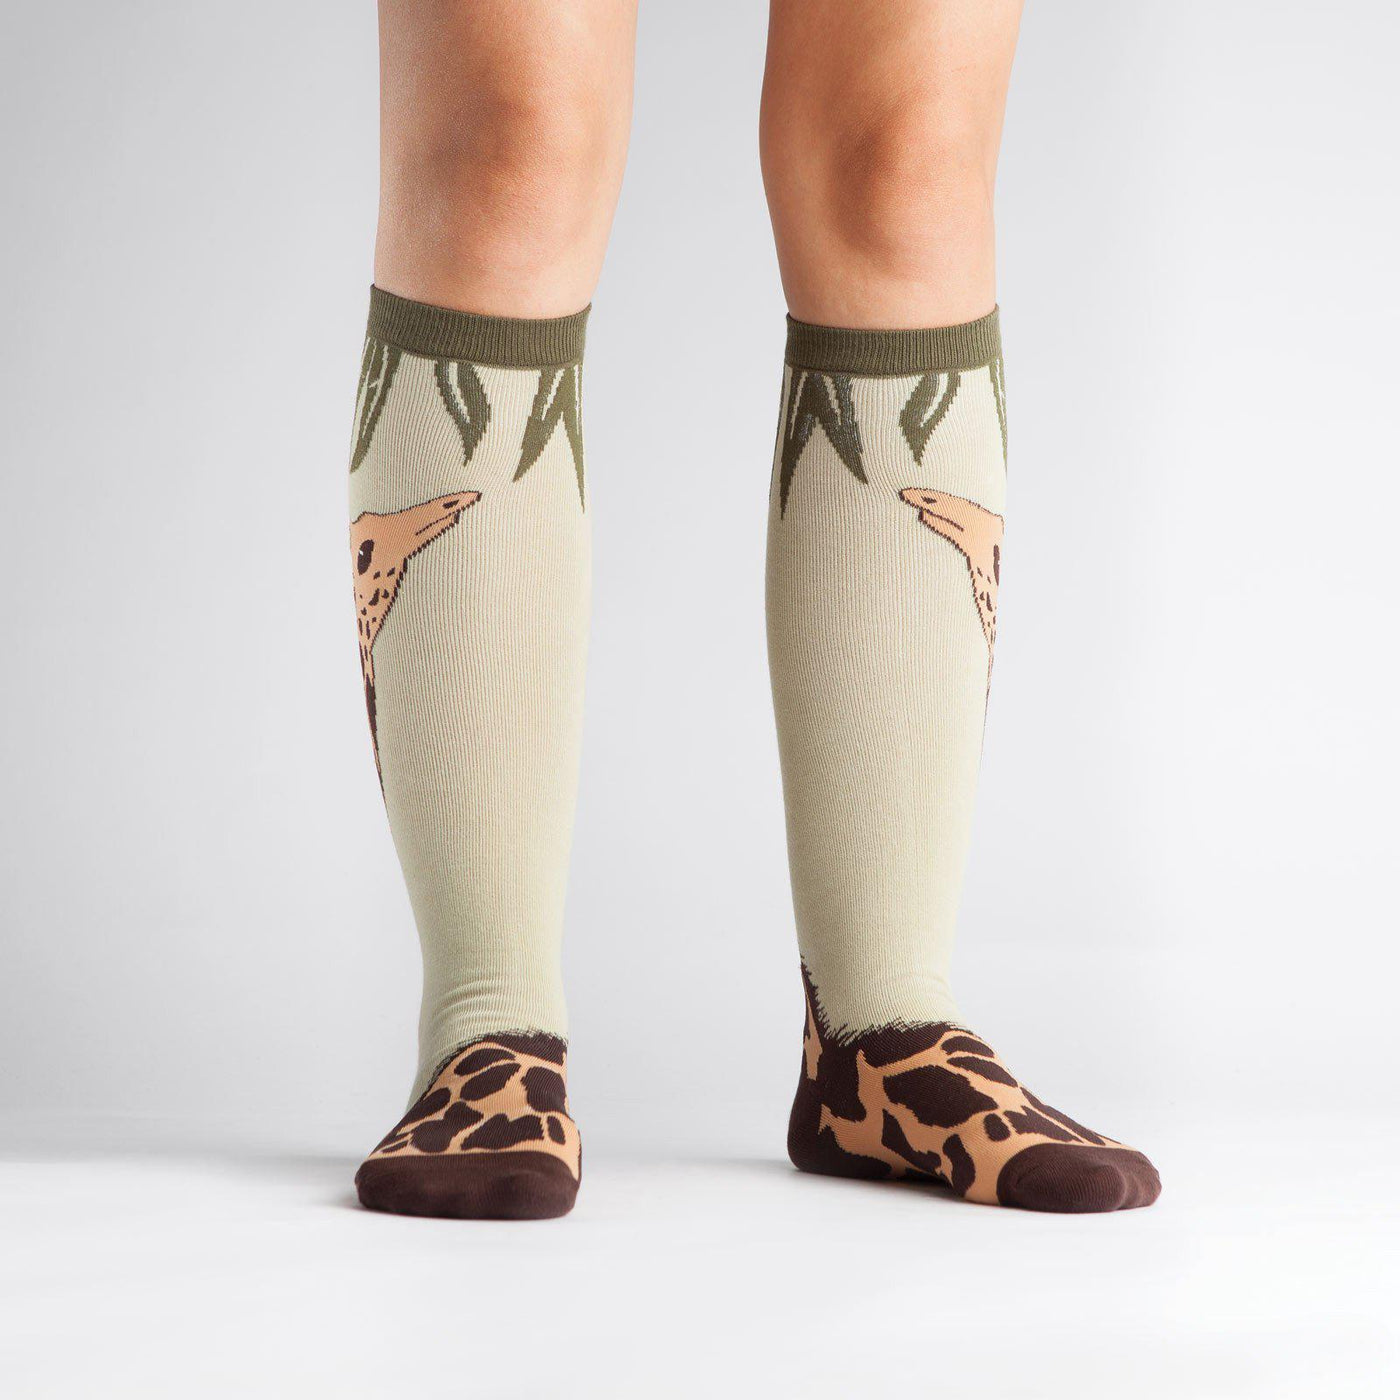 Sock It To Me - Giraffe Knee High Socks | Women's - Knock Your Socks Off